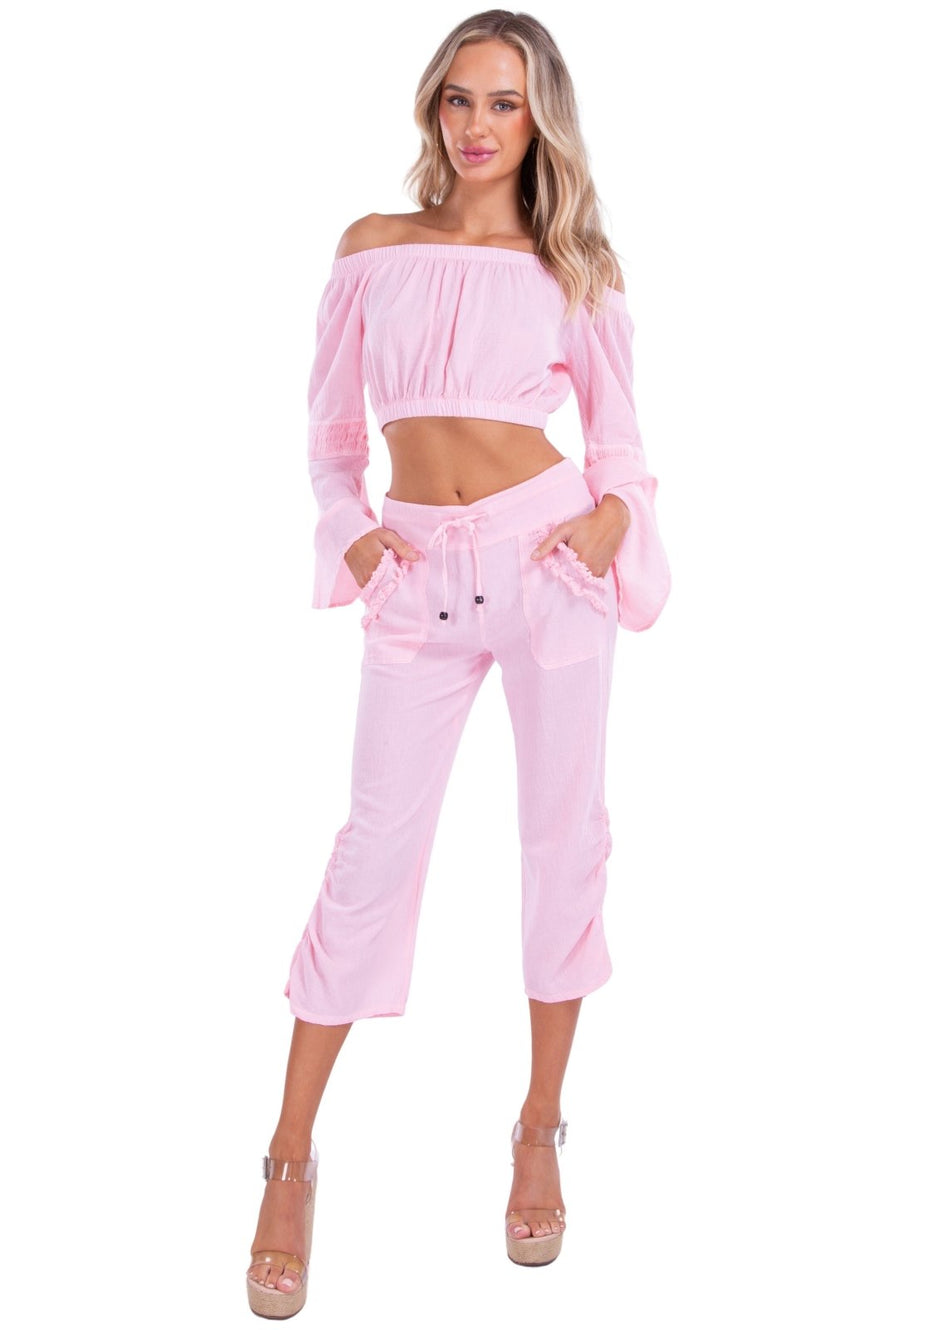 Lyla' Bell Sleeve Top Baby Pink - Seaspice Resort Wear